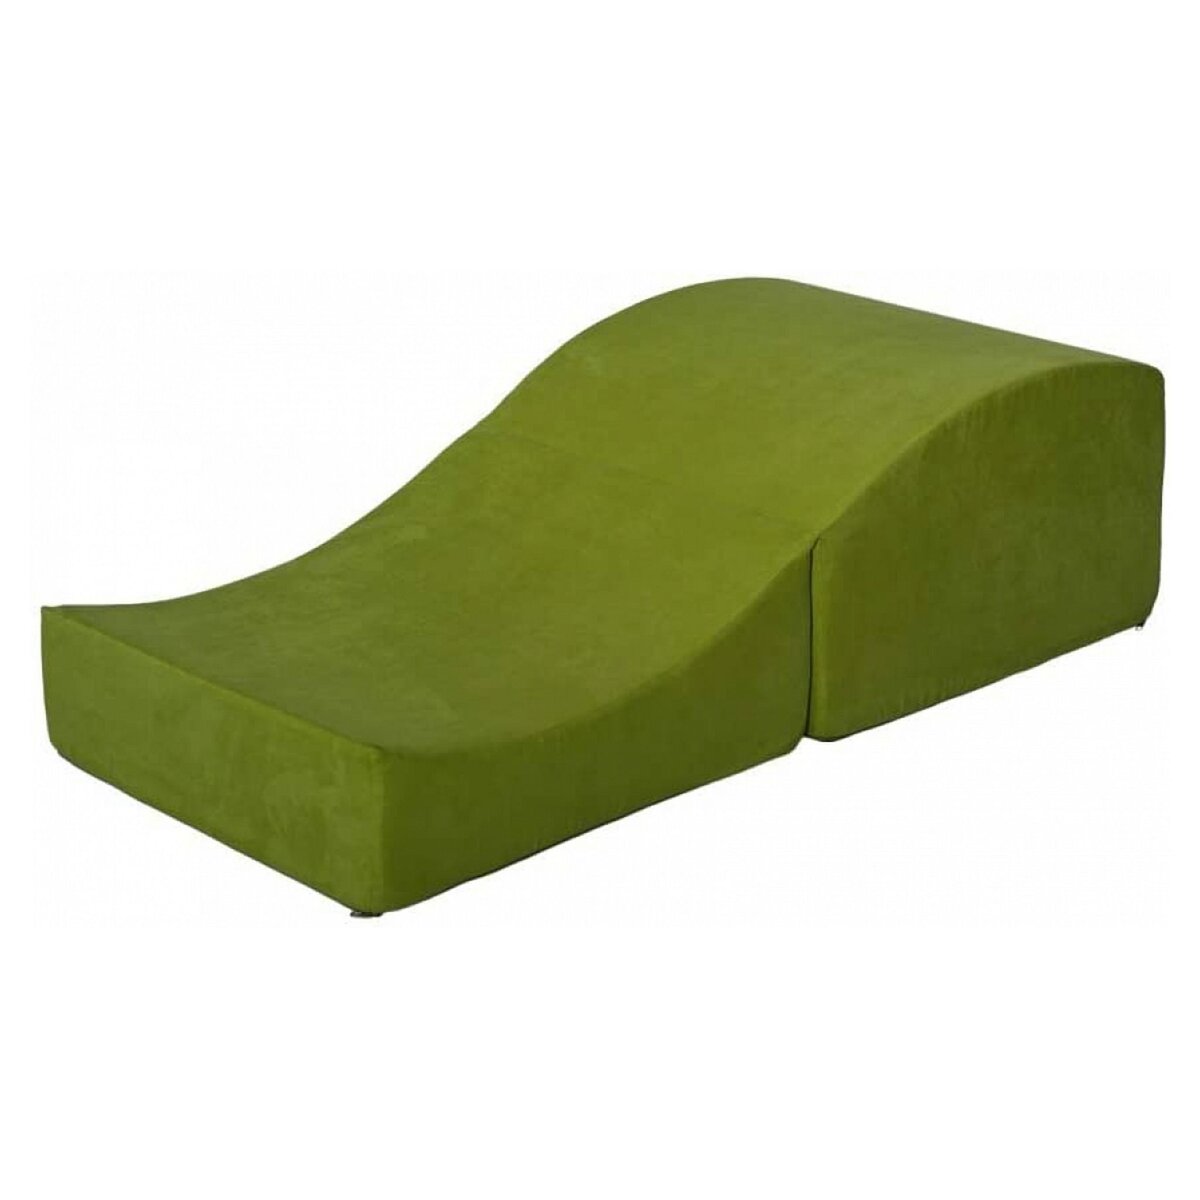  Fauteuil relaxant rabattable de forme préformé vert